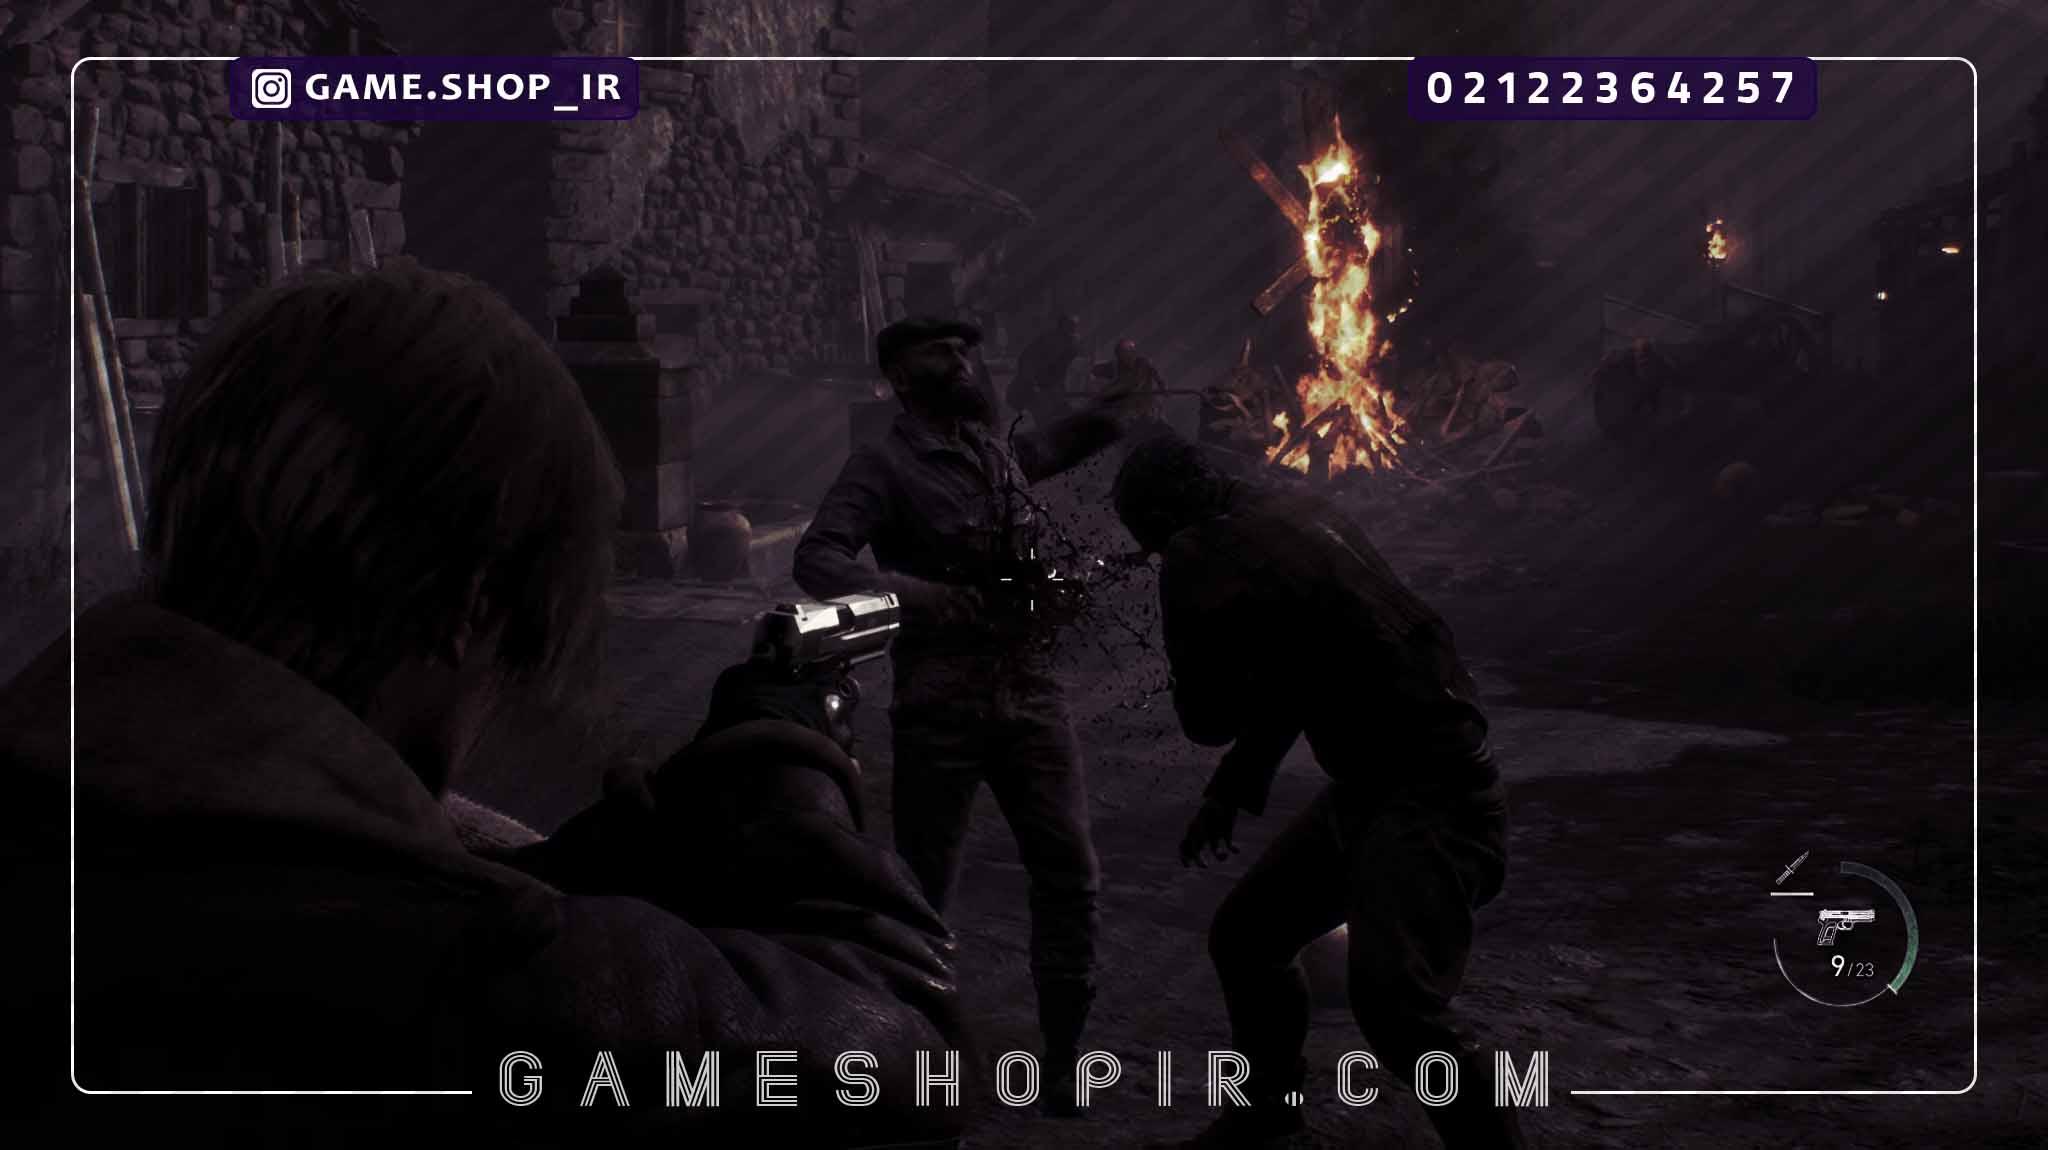 ریمیک Resident Evil 4،فروش فوق‌ العاده آن و صعود سهام Capcom | گیم شاپ